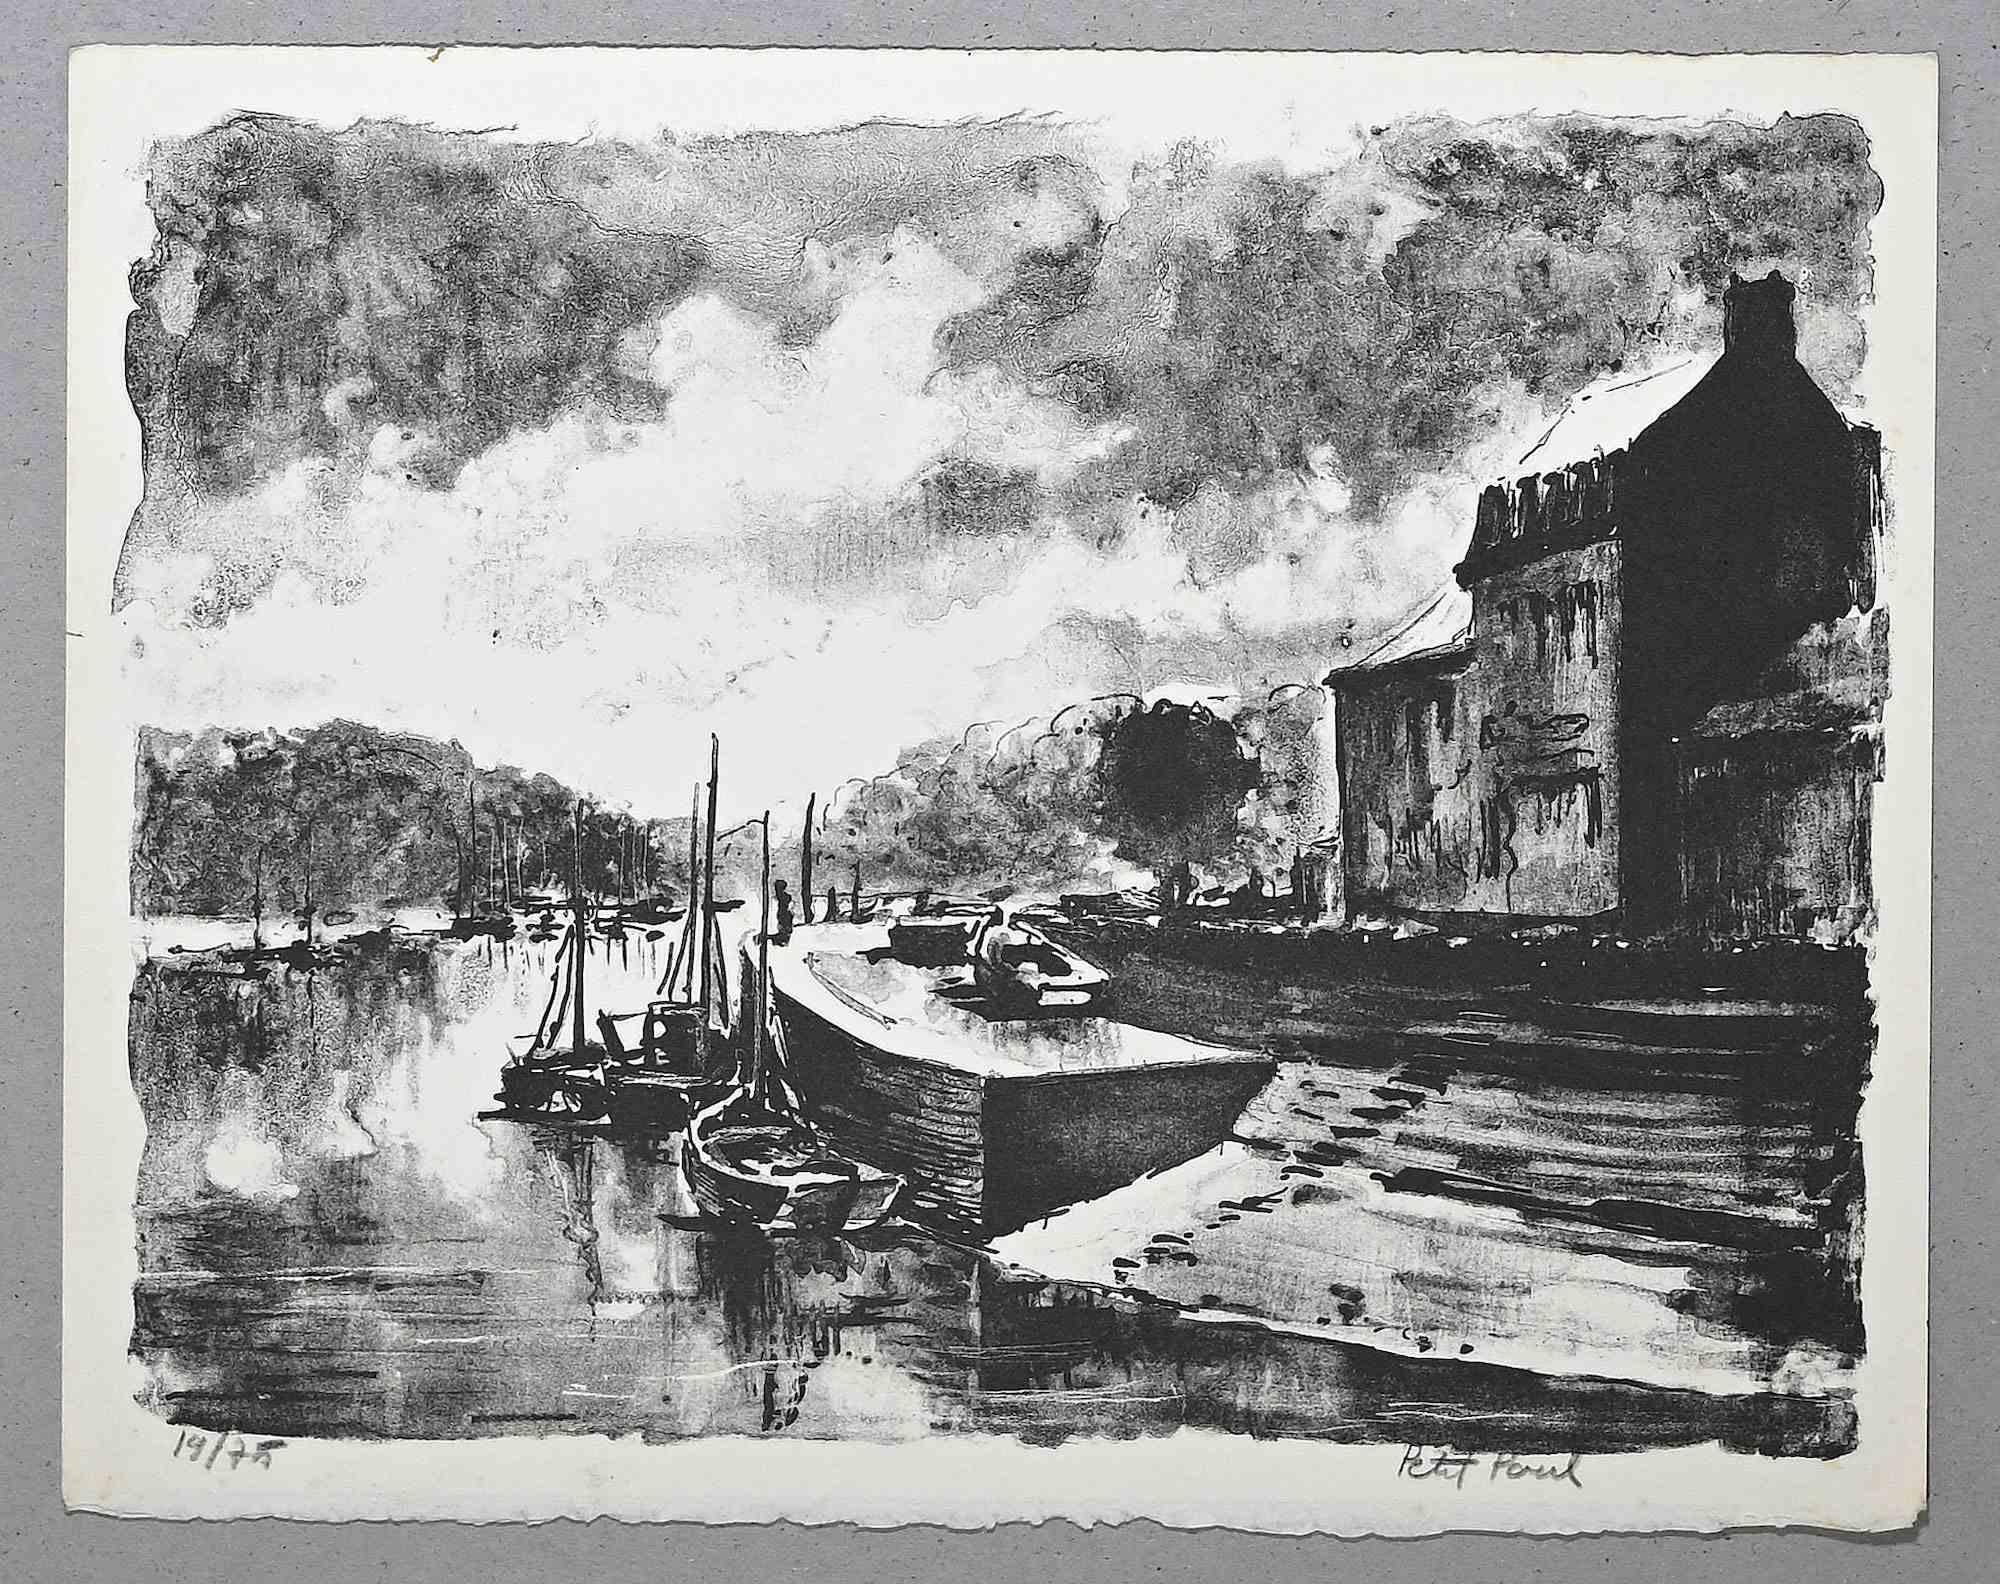 Harbor View ist eine Lithographie von Paul Petit aus der Mitte des 20. Jahrhunderts.

Handsigniert.

Nummeriert, 19/75

Das Kunstwerk wird mit sicheren Strichen in einer ausgewogenen Komposition dargestellt.